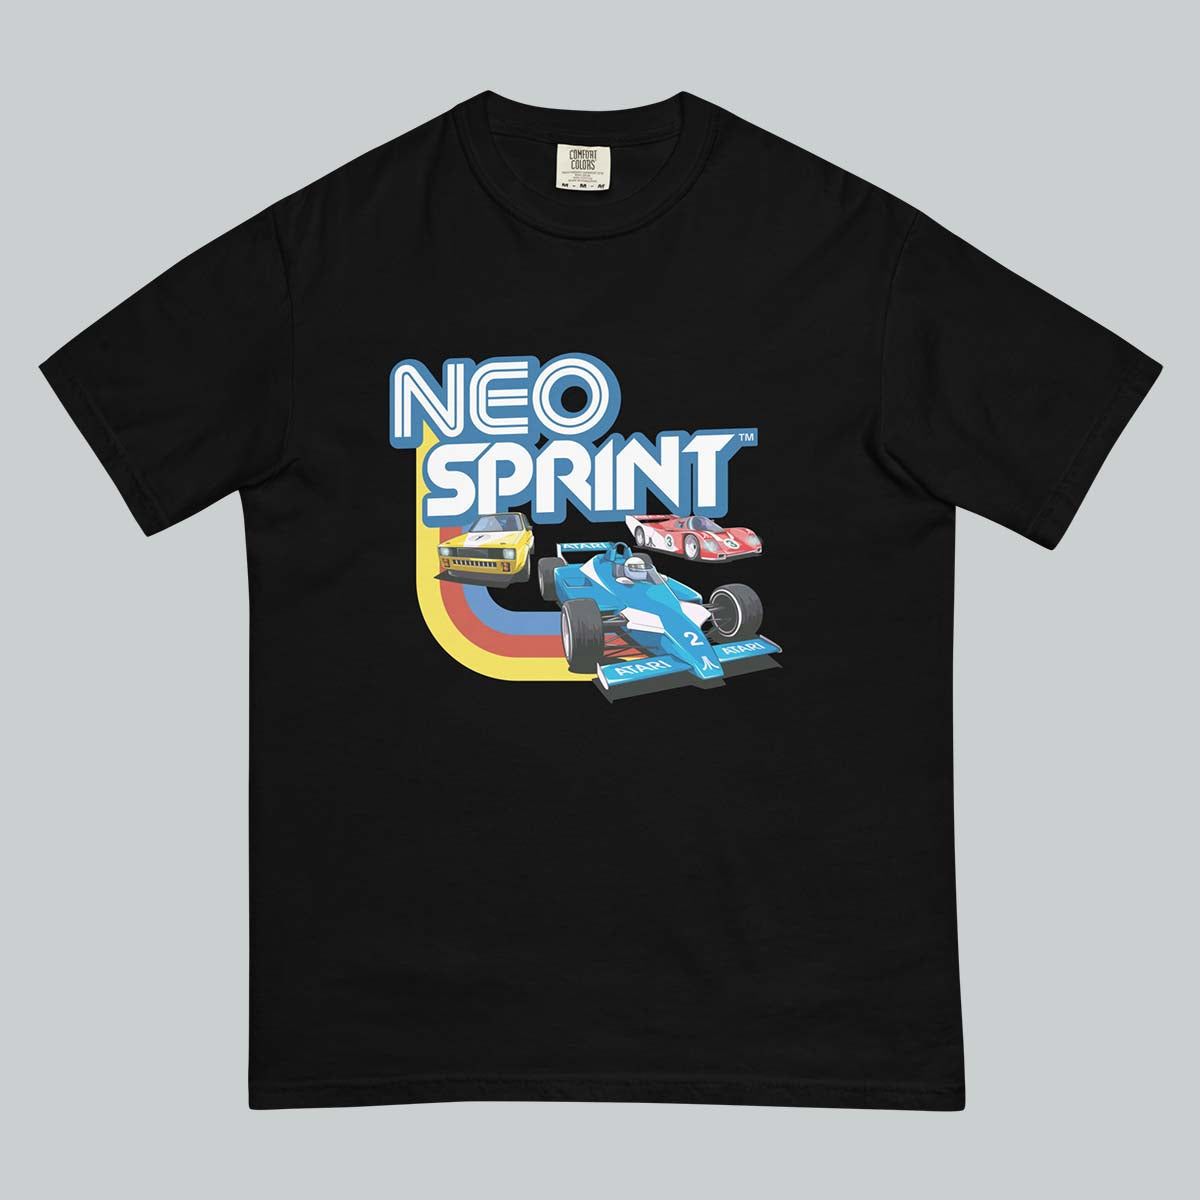 NeoSprint